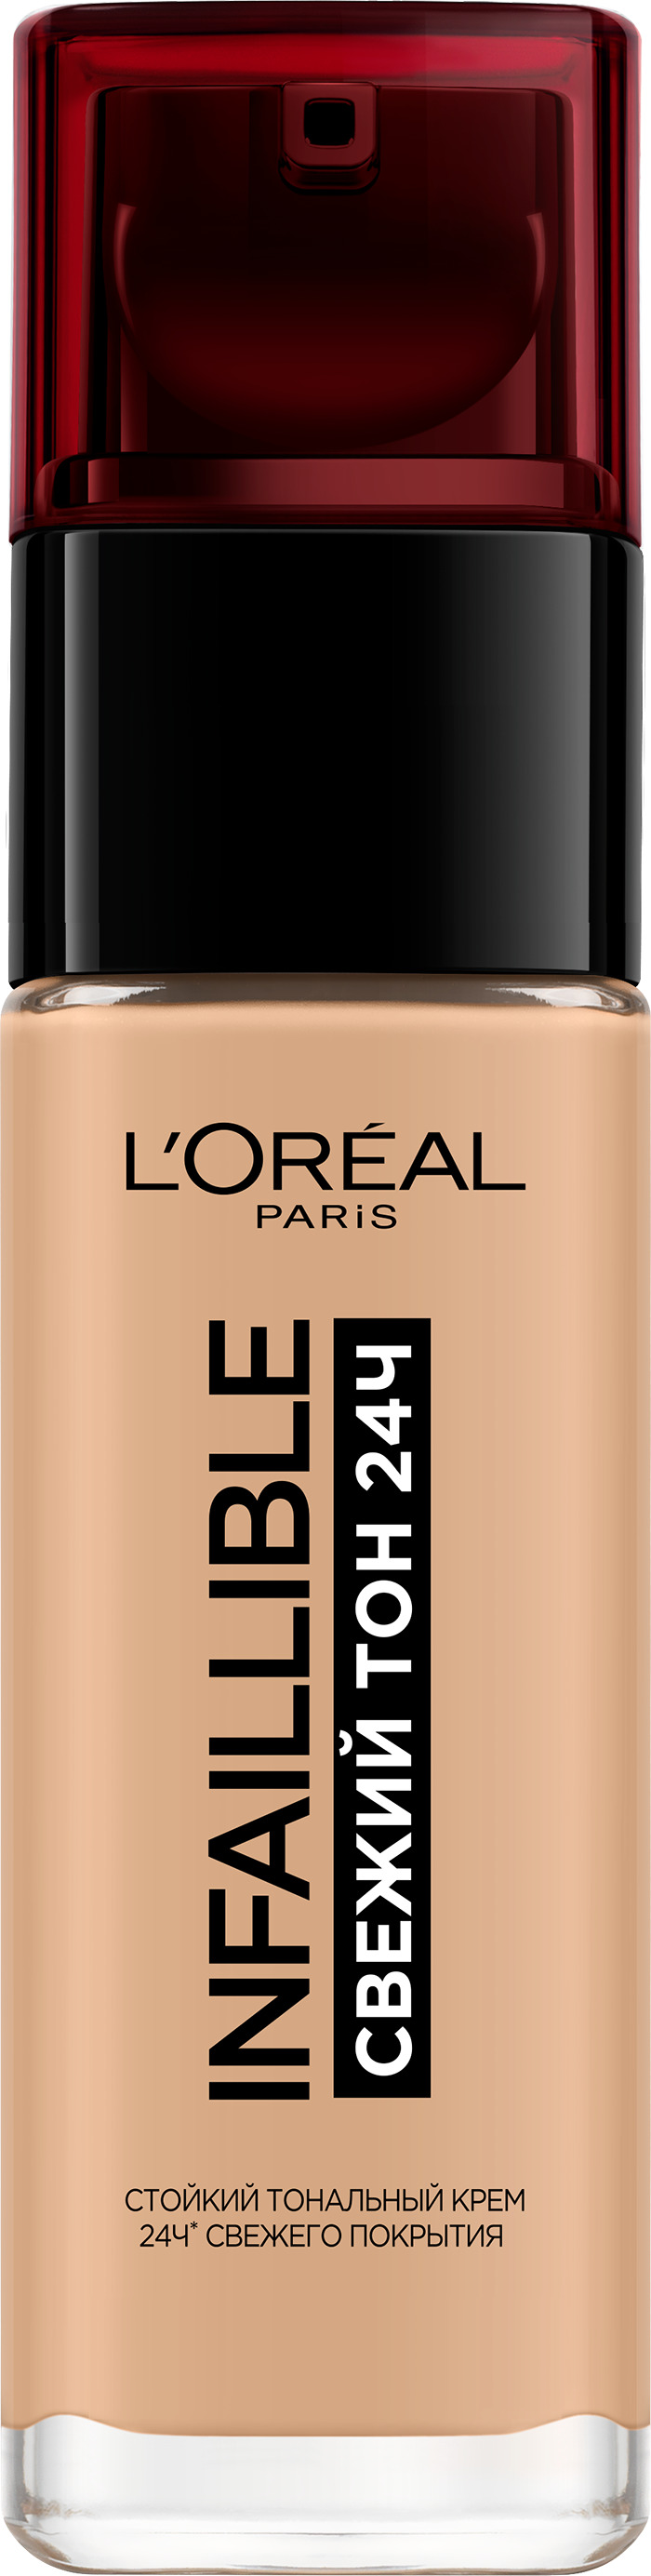 Тональный крем LOreal Paris Infaillible стойкий, матирующий тон 200